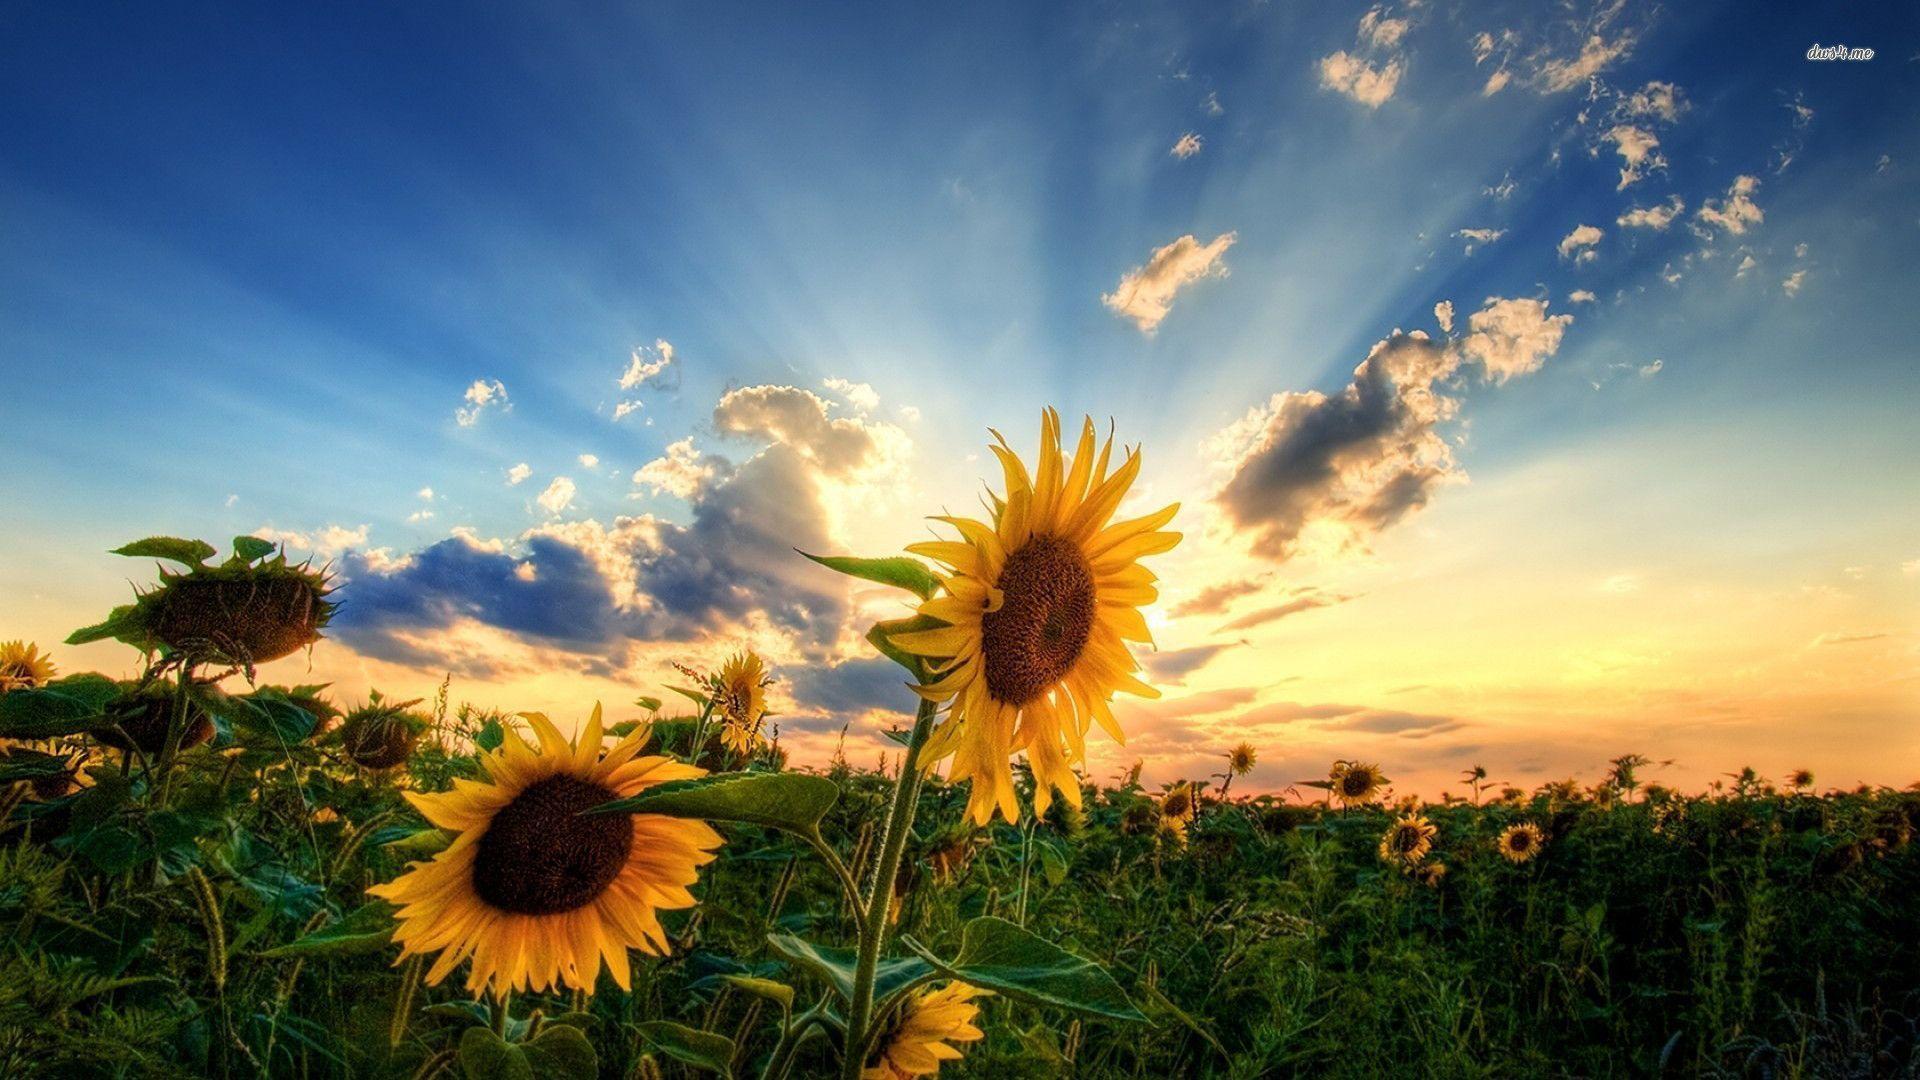 Tận hưởng trọn vẹn vẻ đẹp của hoa hướng dương với bộ sưu tập hình nền Sunflowers Wallpapers độc quyền chỉ có tại chúng tôi. Sự tươi trẻ và sức sống của loài hoa này sẽ ùa vào màn hình điện thoại của bạn mỗi khi nhìn vào nó, giúp bạn tràn đầy năng lượng cả ngày.